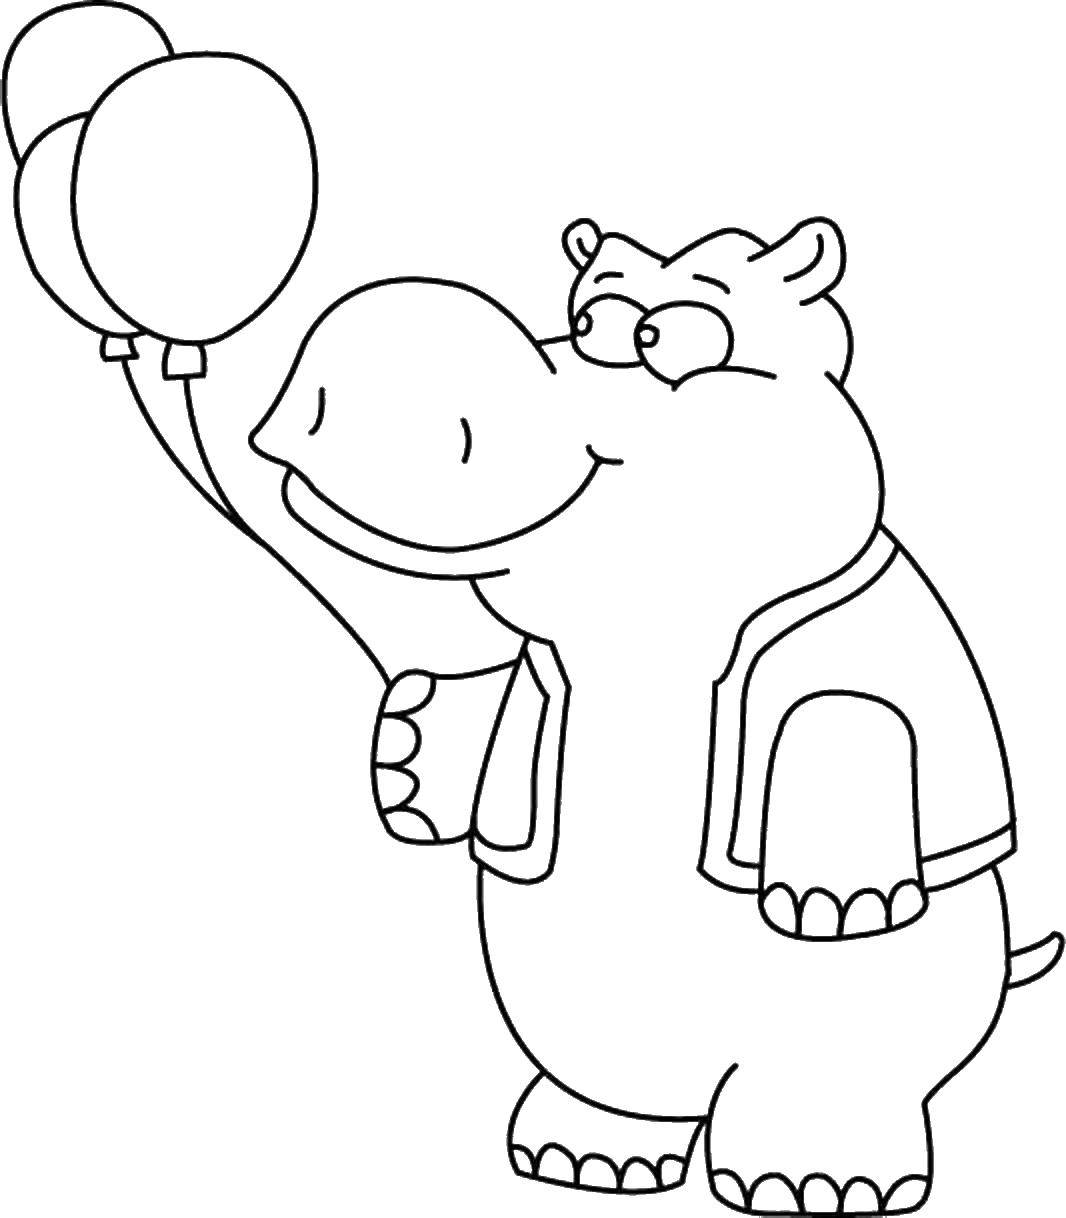 Раскраски с воздушными шариками для детей с милыми воздушными шариками черно-белый рабочий лист